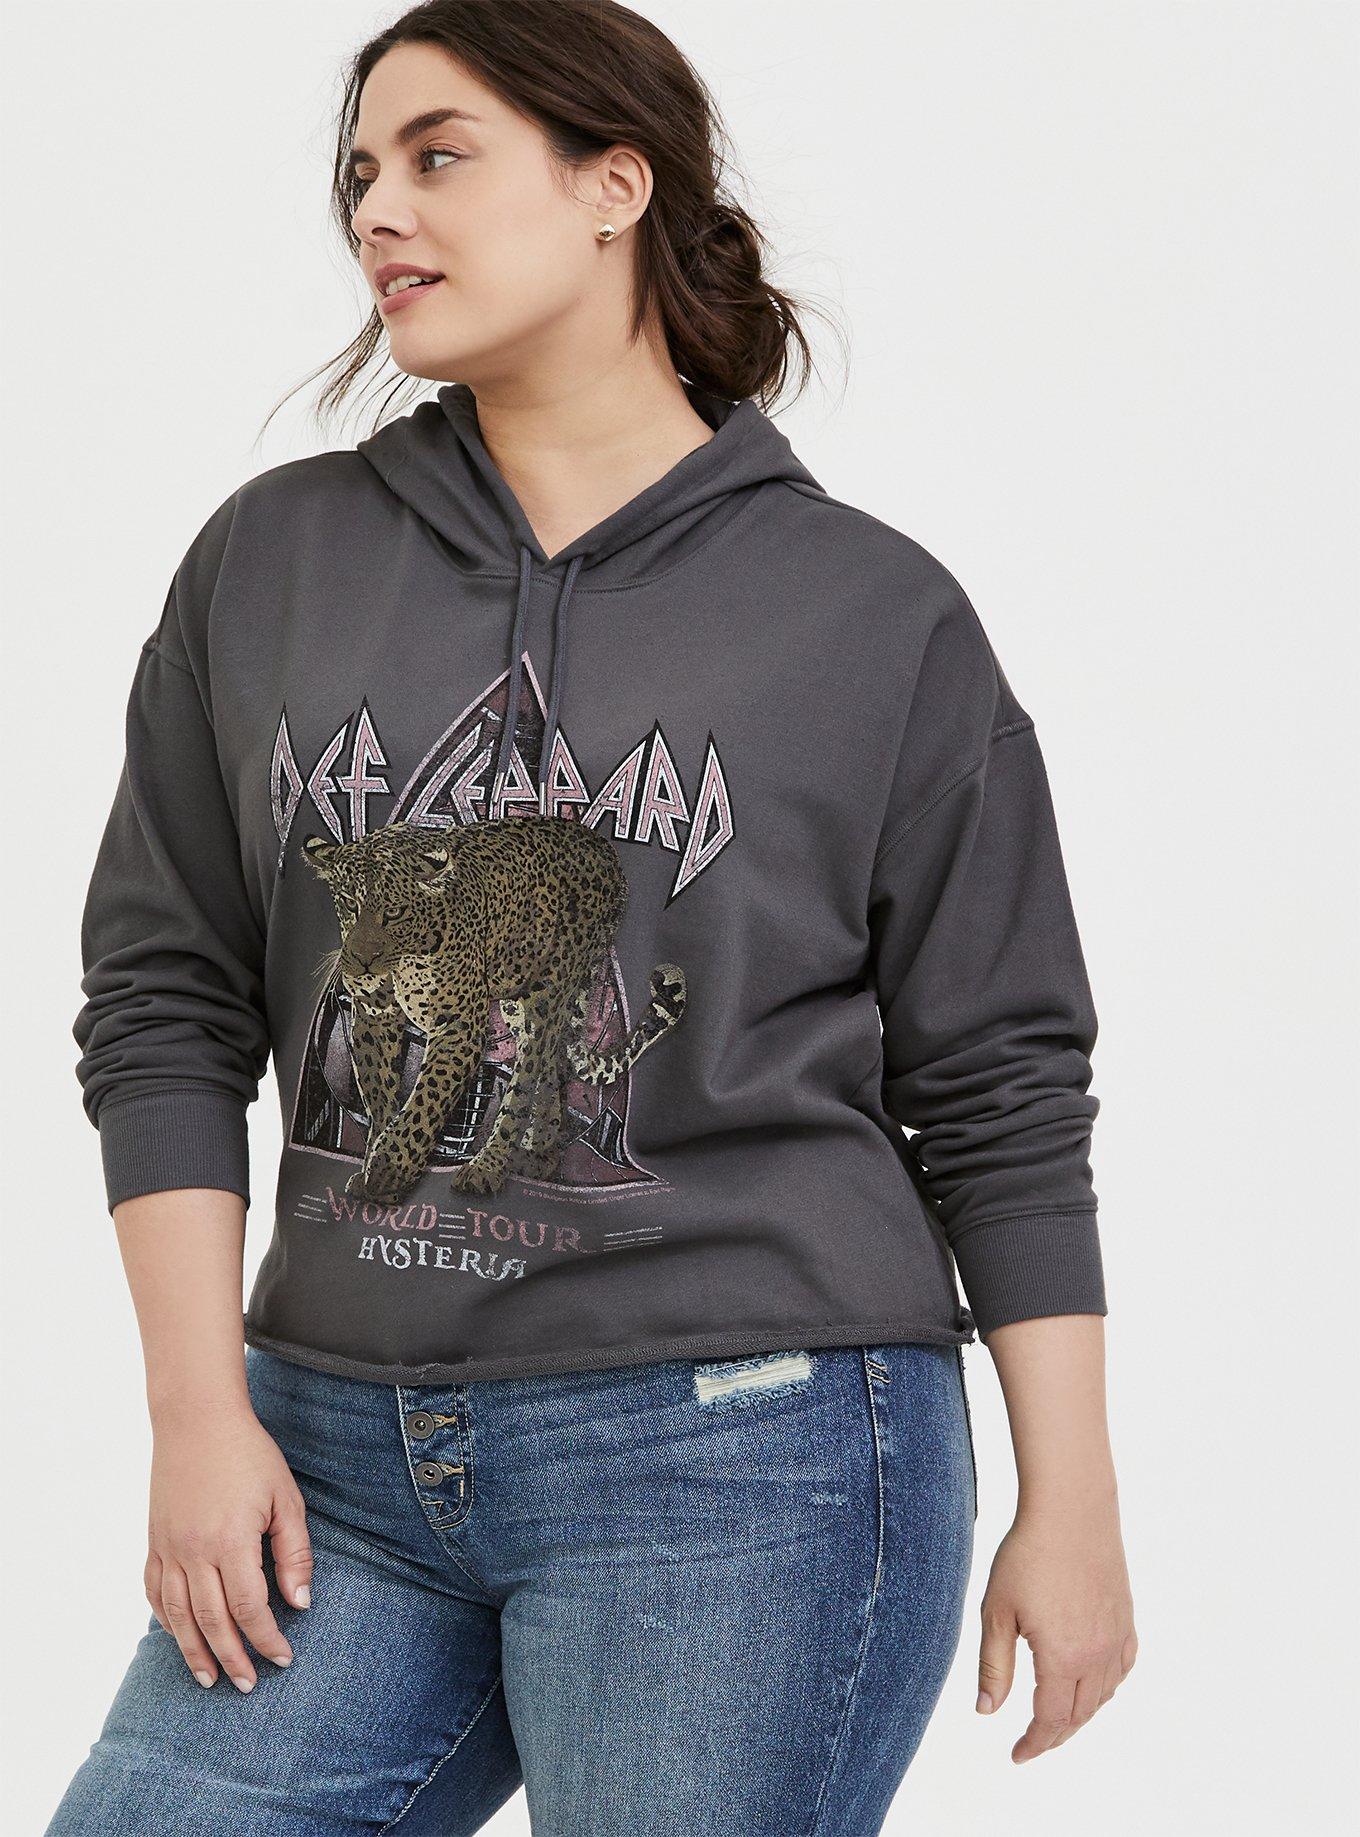 Rockwear Black Cropped Sweatshirt Hoodie - AU 12 –